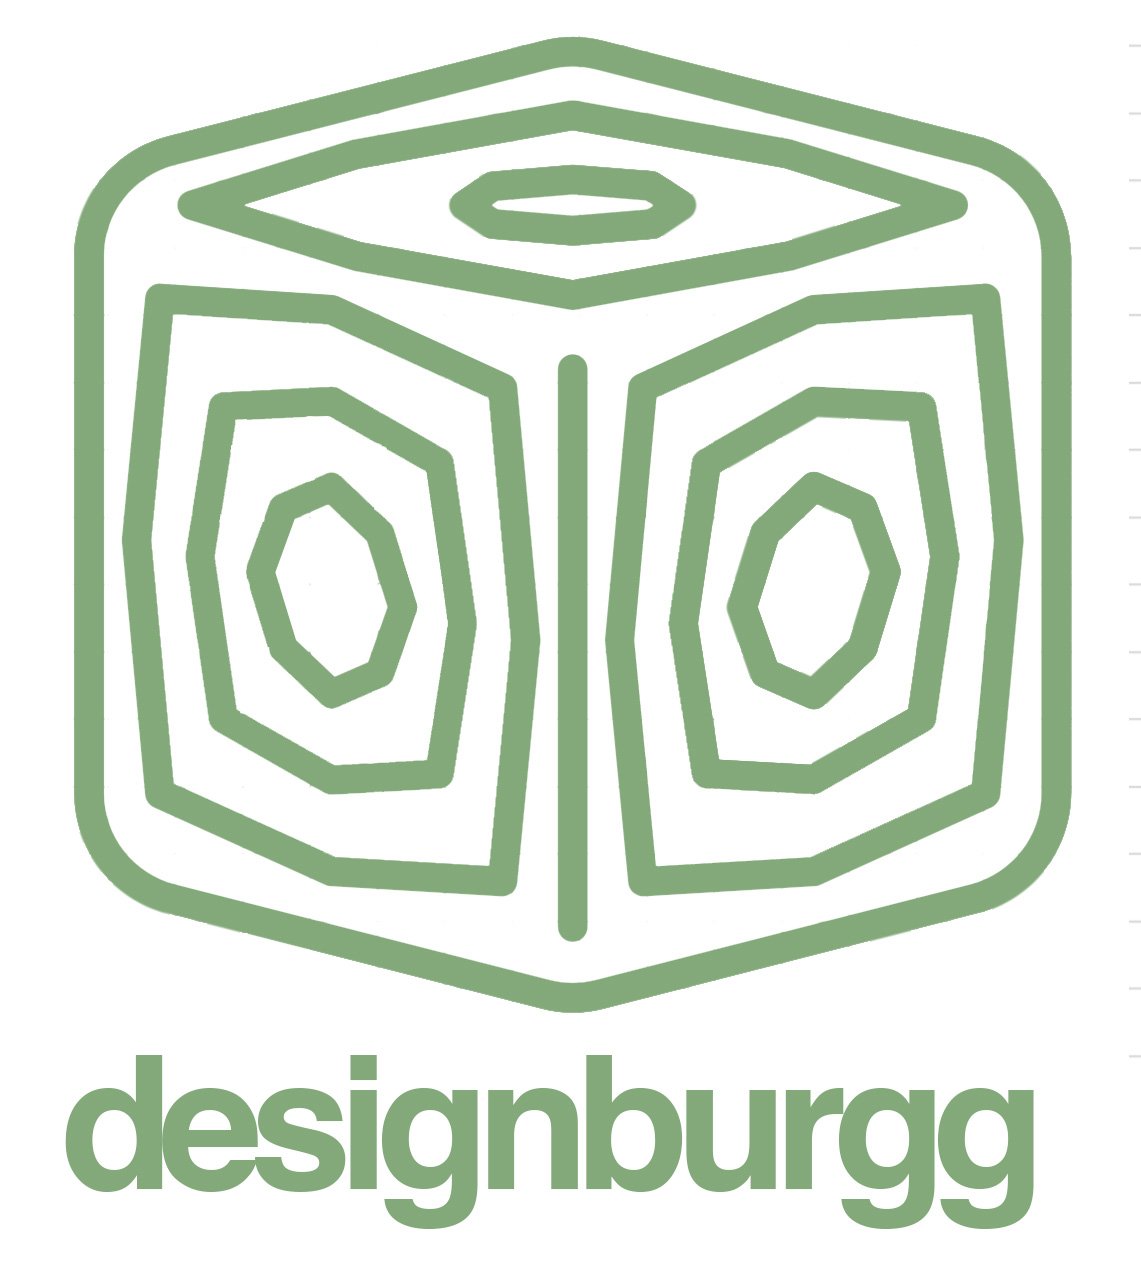 Designburgg